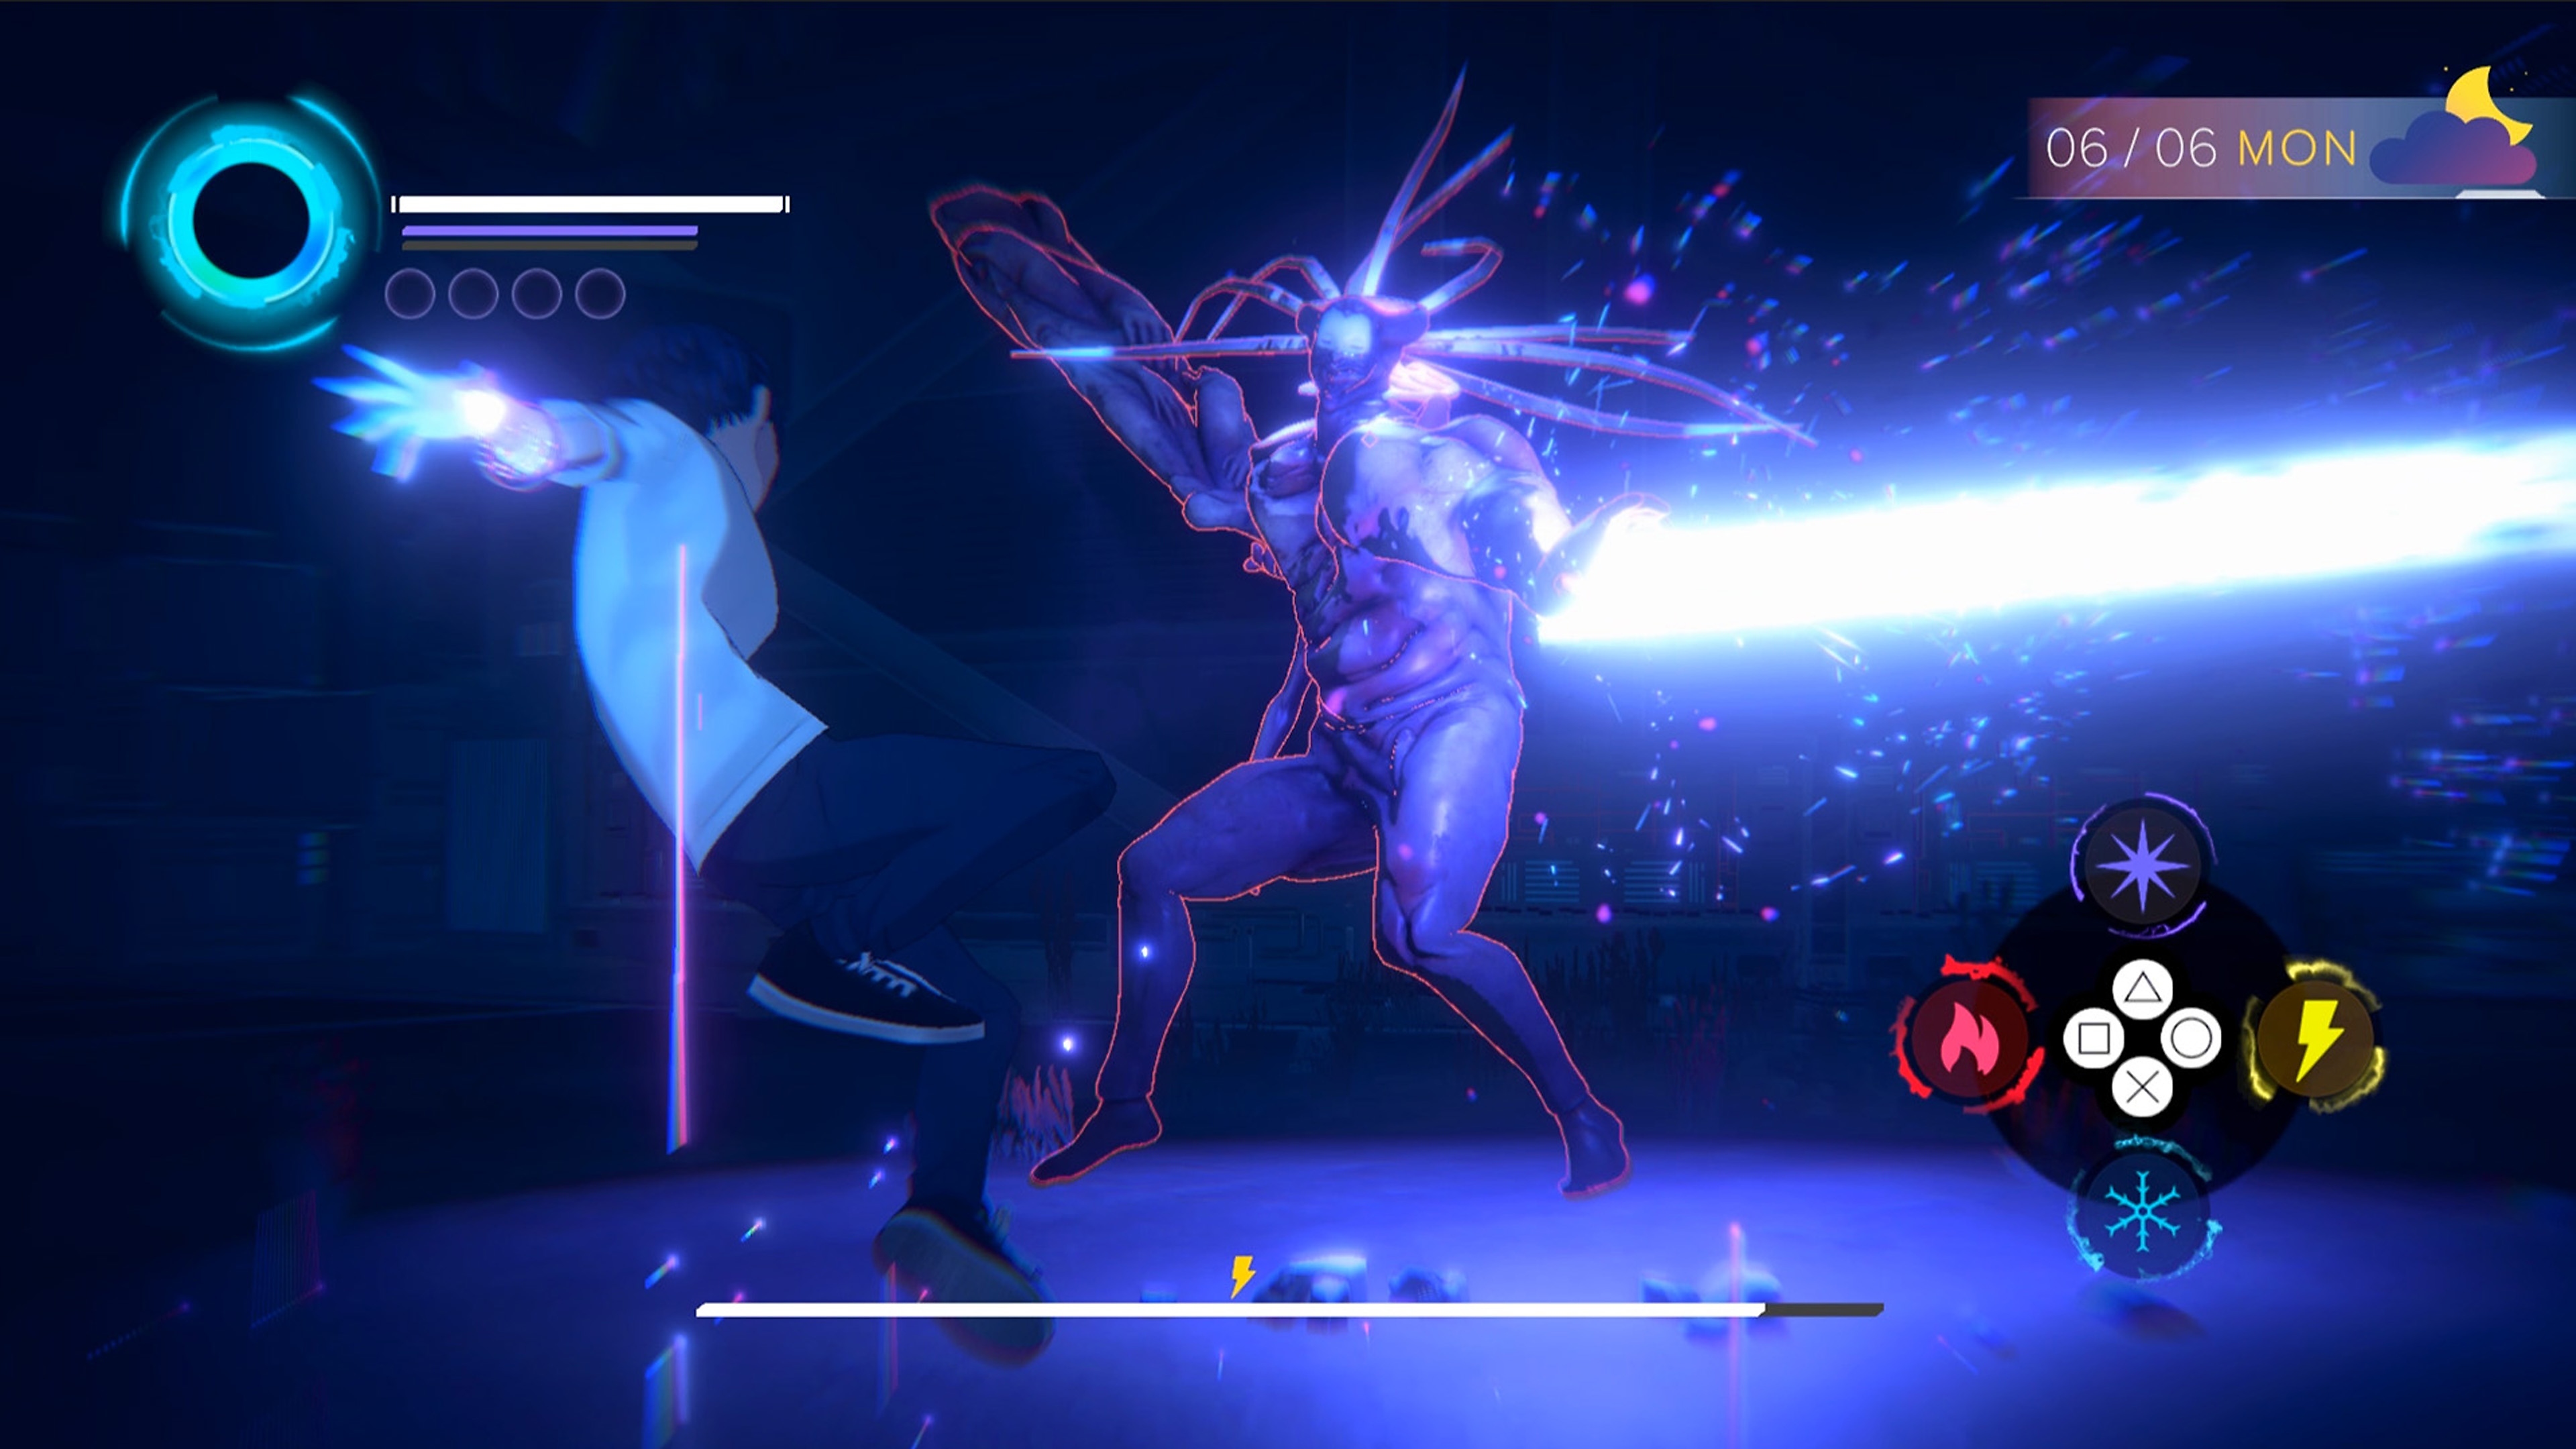 Eternights-screenshot van een tiener in gevecht met een grote, mensachtige demon.